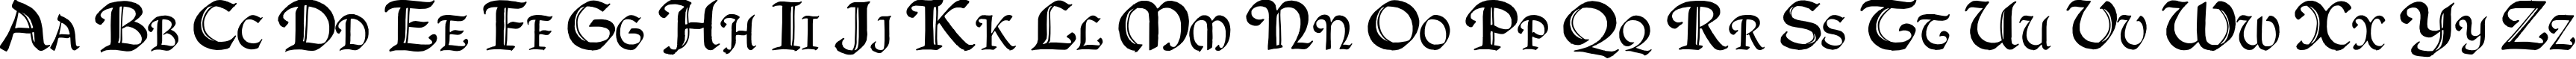 Пример написания английского алфавита шрифтом QuillCapitals